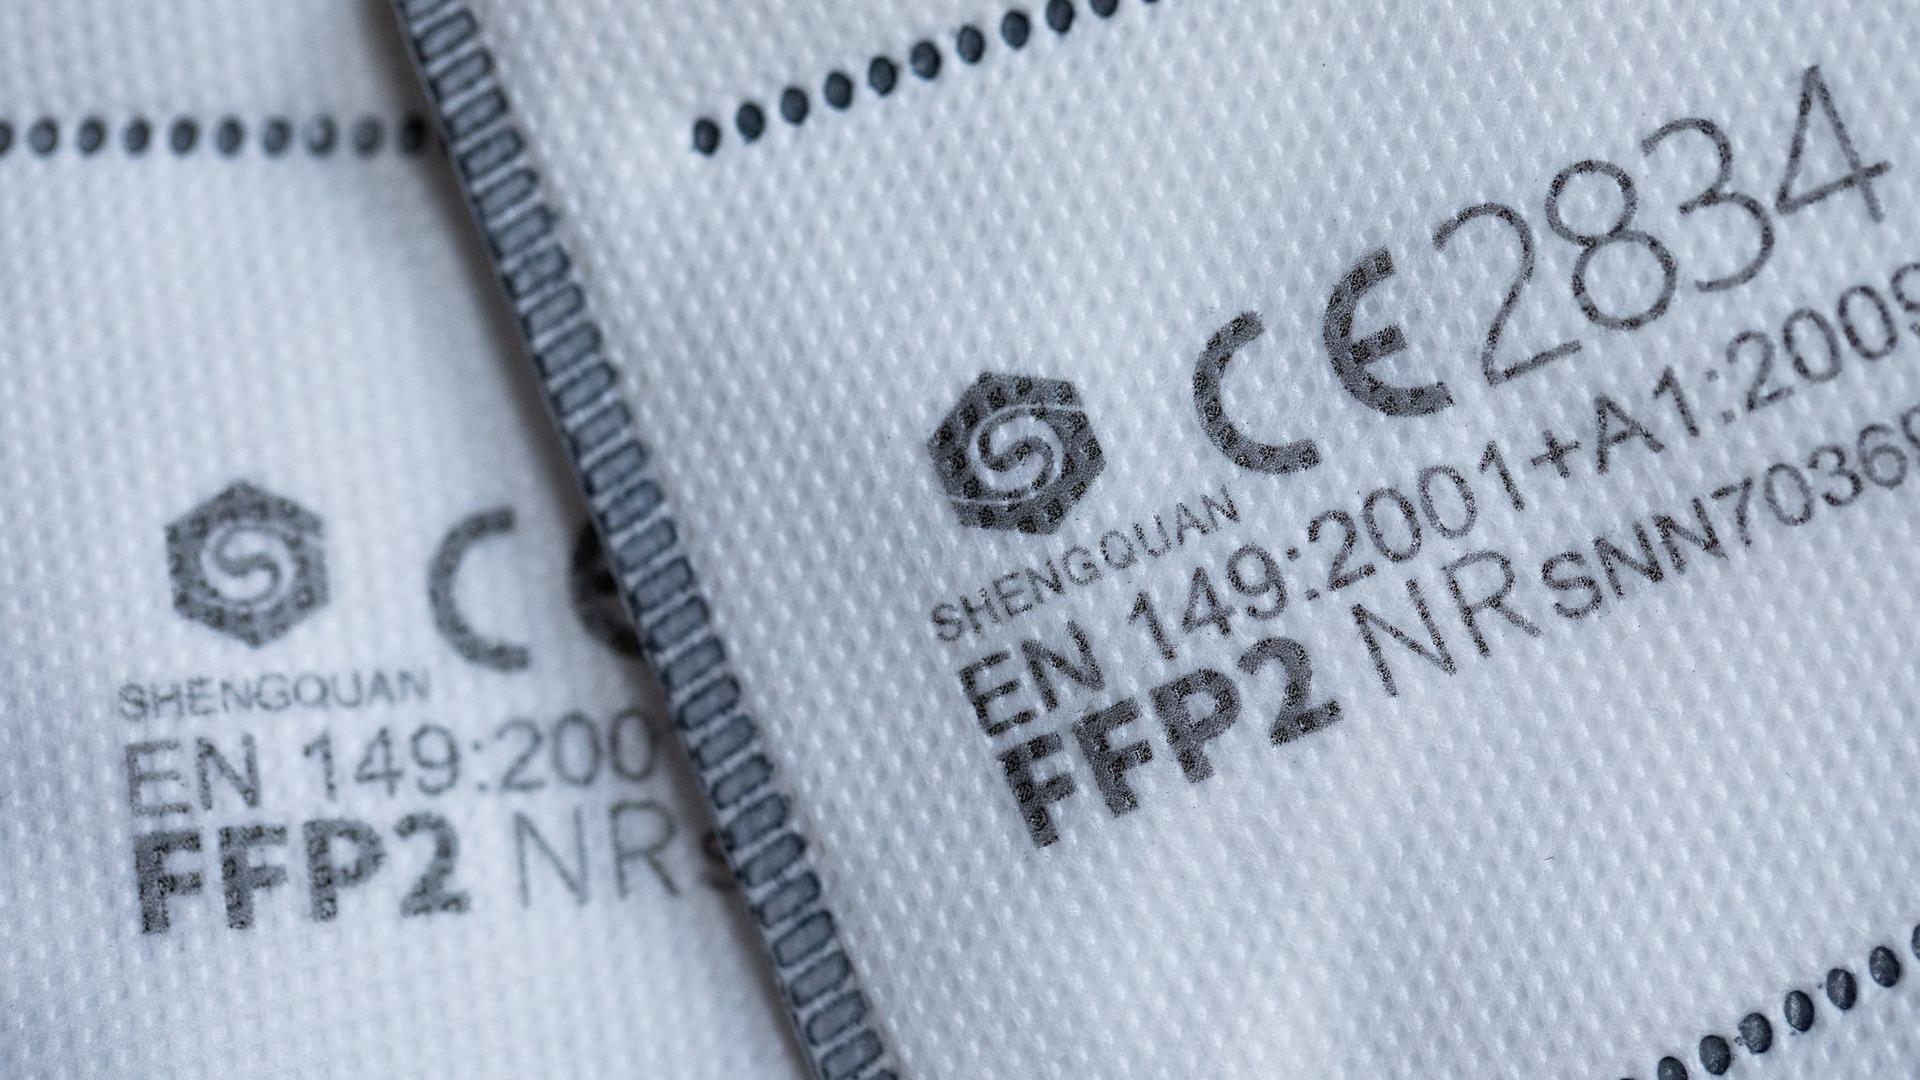 FFP2-Masken mit CE-Zertifizierung liegen auf einem Tisch.